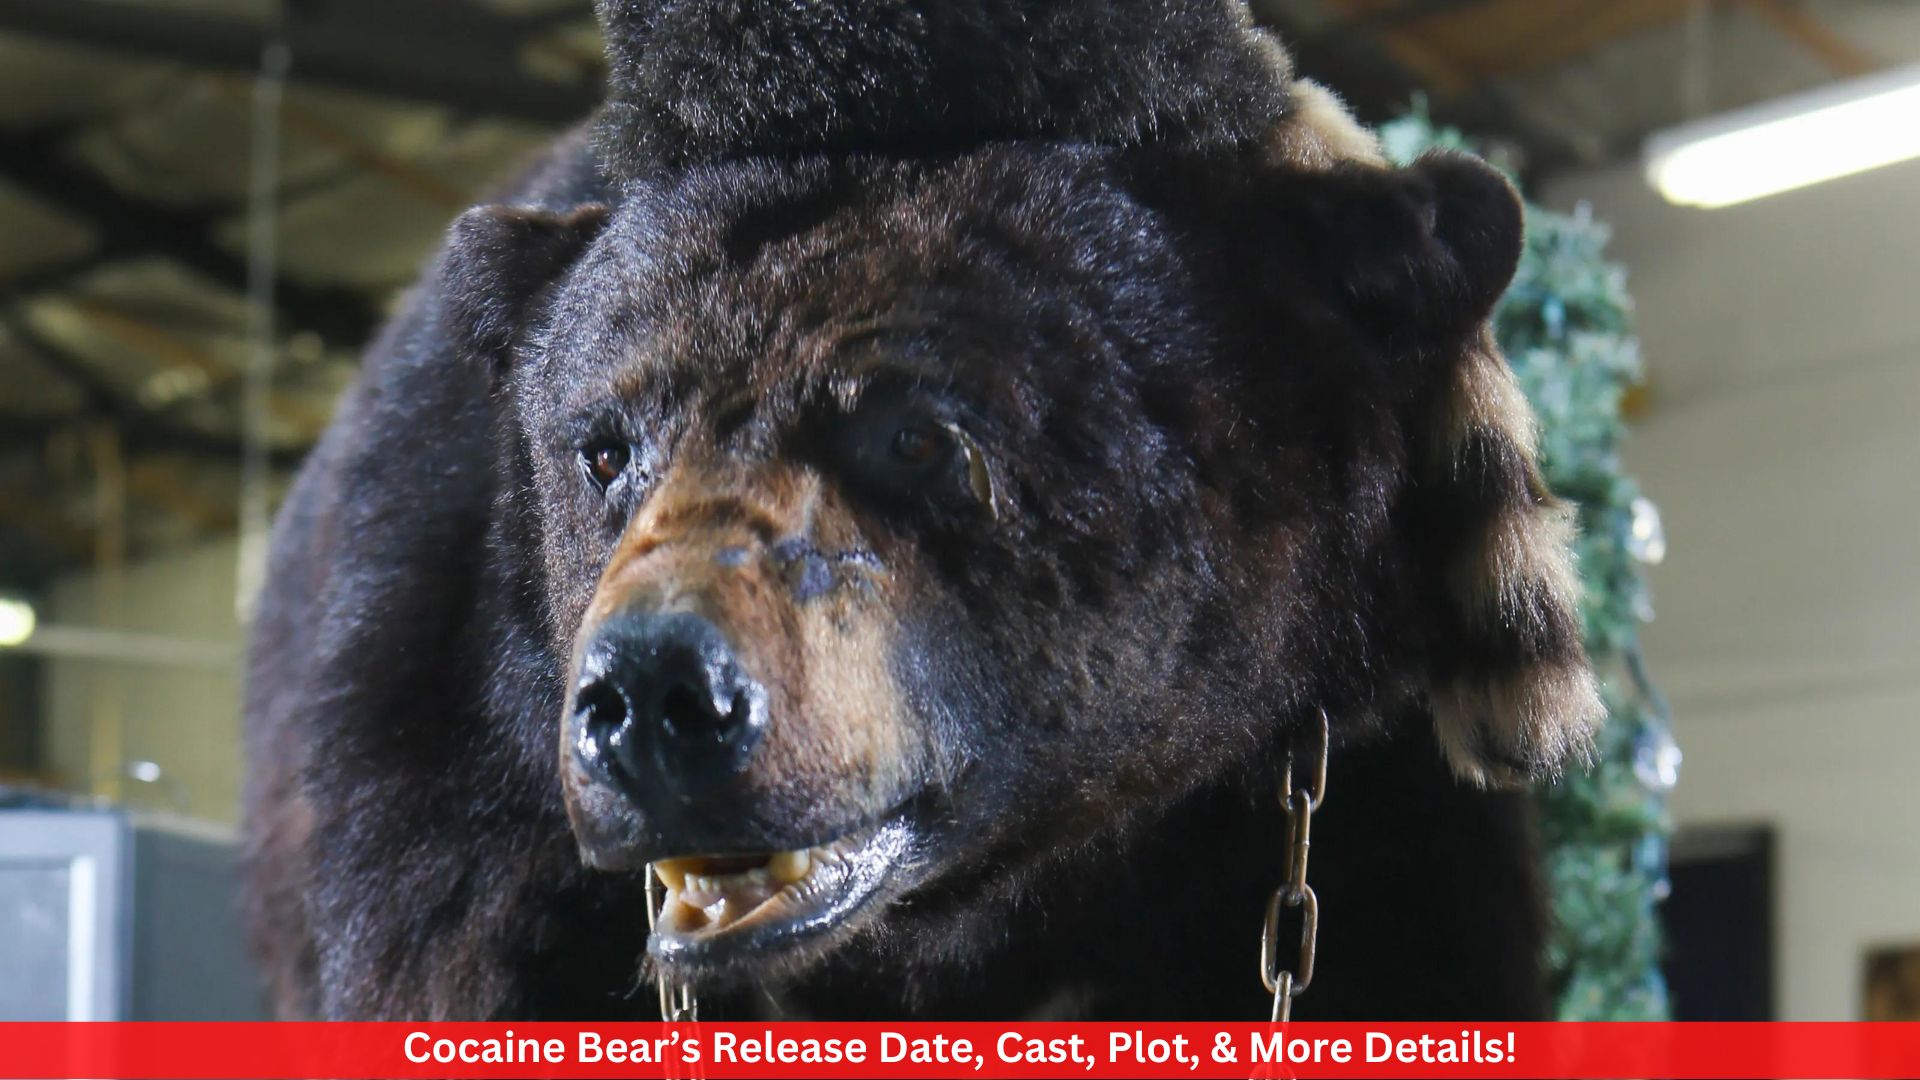 Cocaine Bear’s Release Date, Cast, Plot, & More Details!